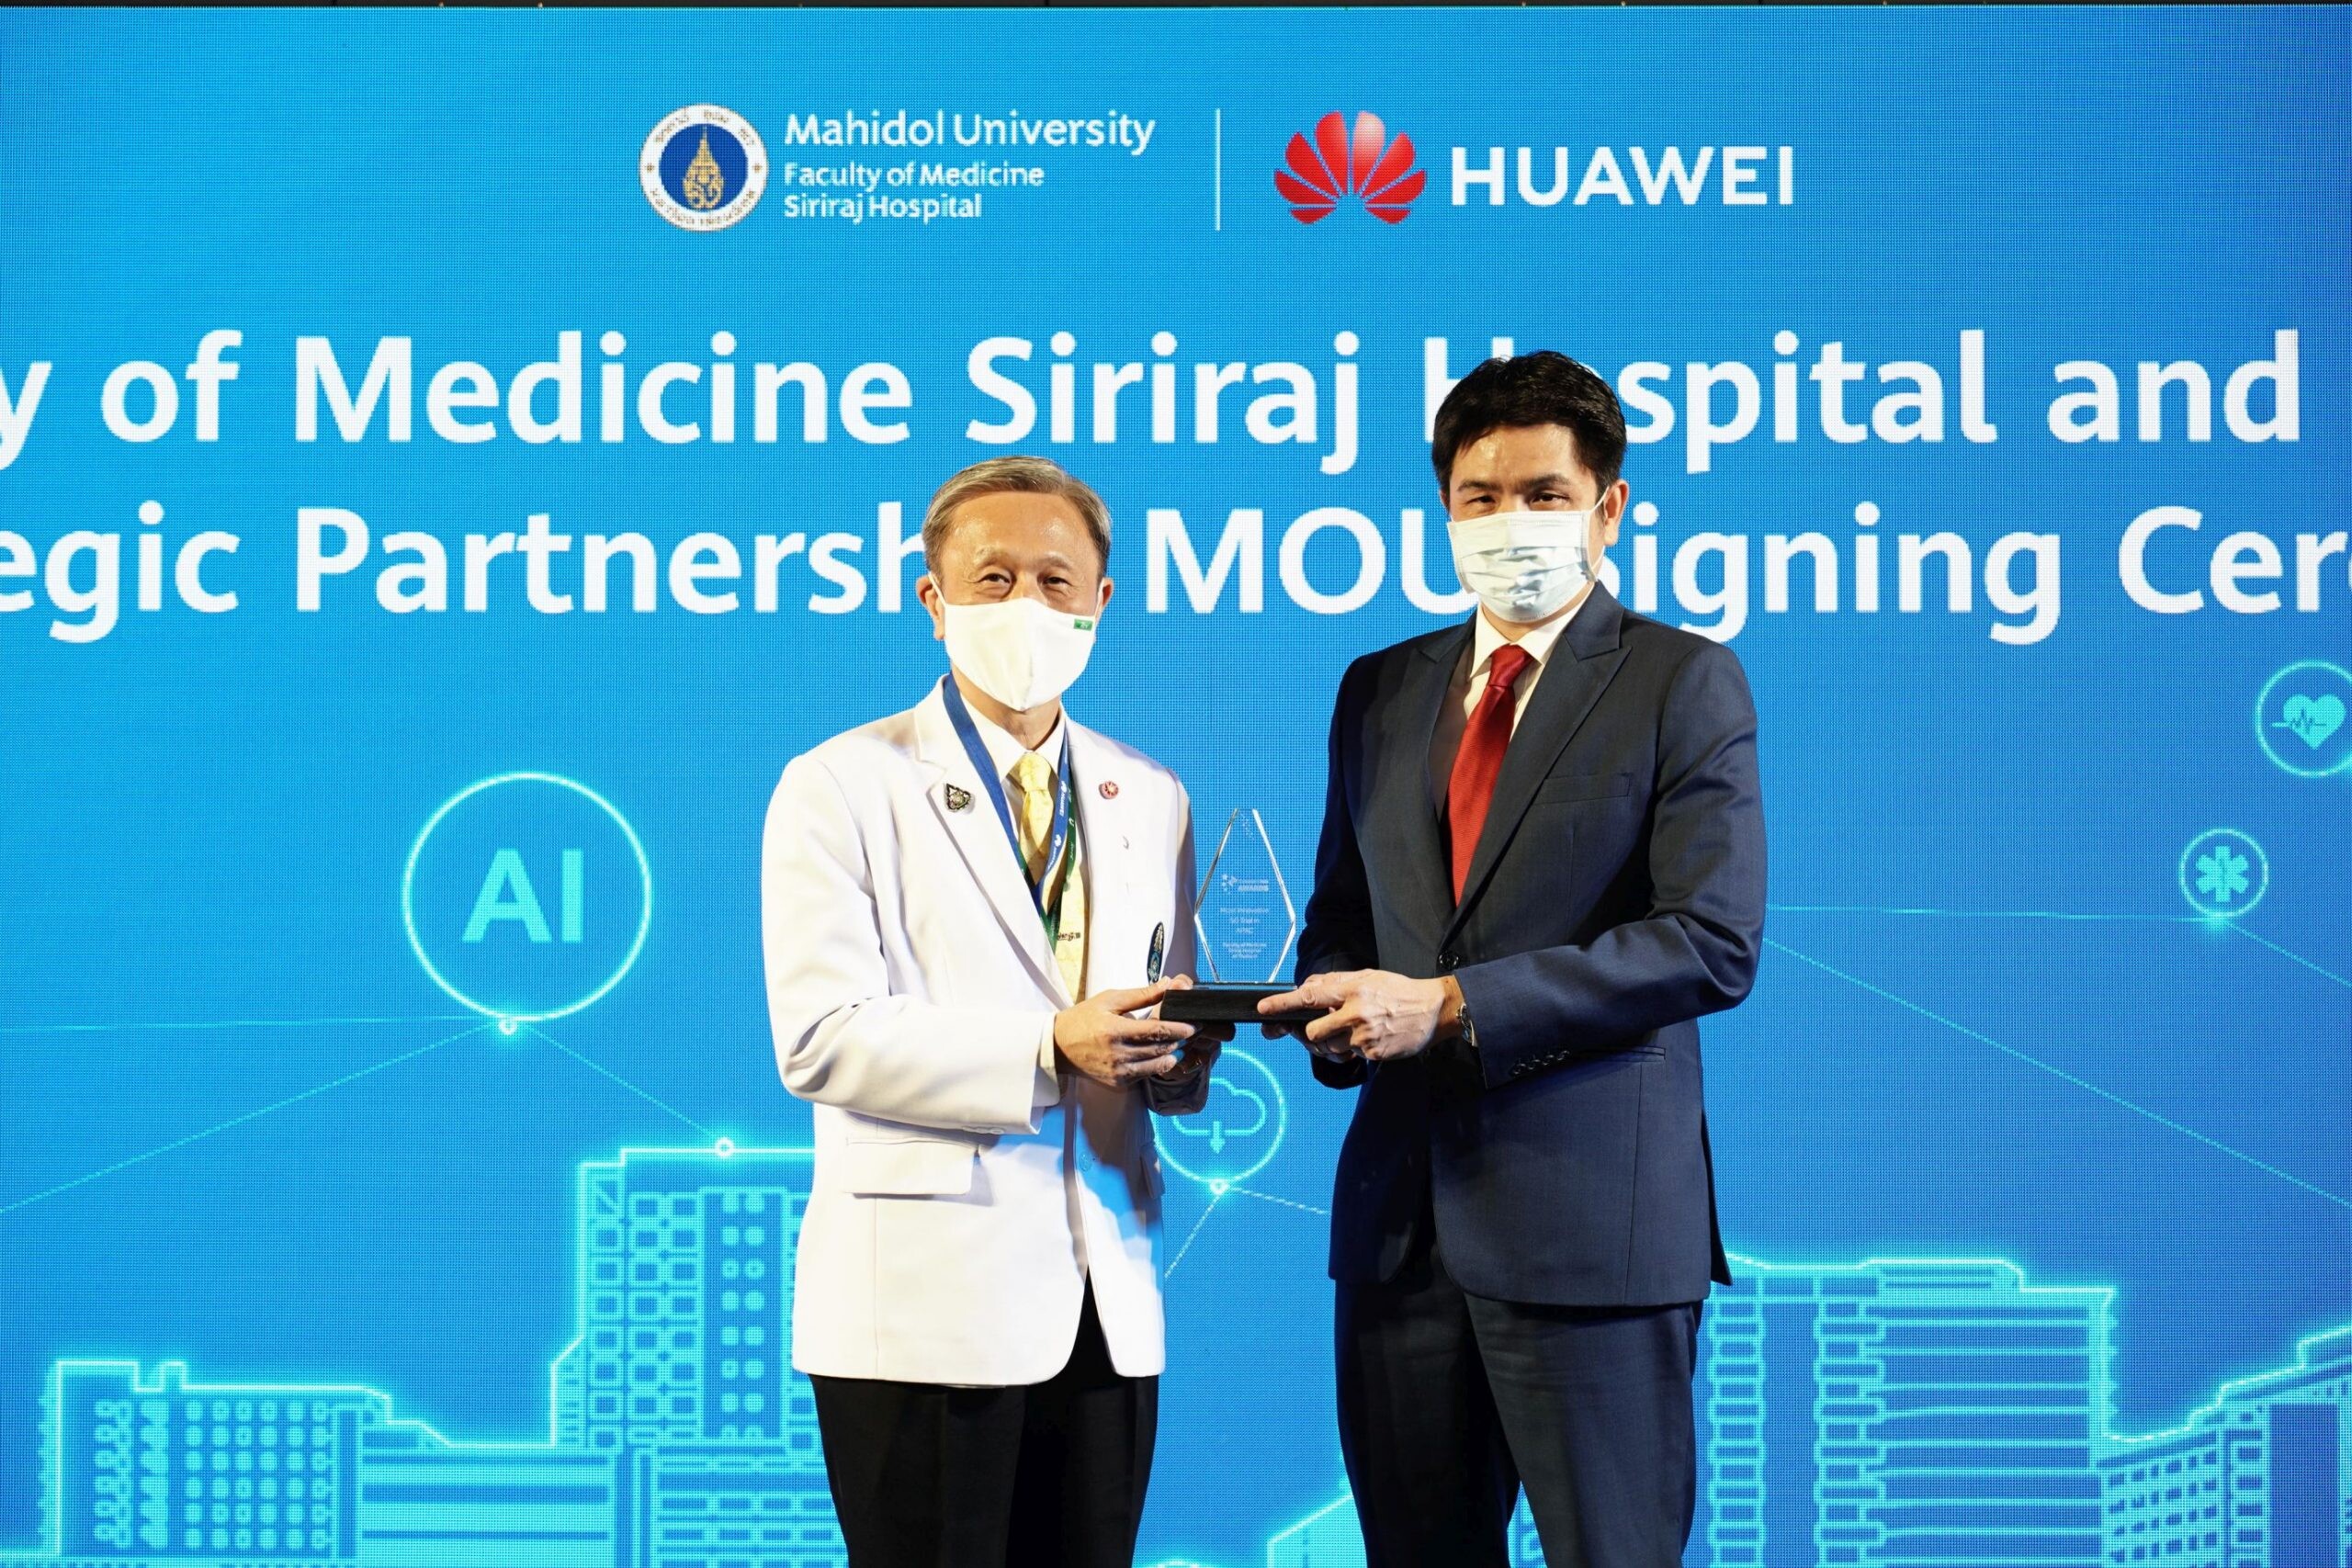 ศิริราชคว้ารางวัลอันทรงเกียรติ จากโครงการ "โรงพยาบาลอัจฉริยะ 5G ที่ปลอดภัยและเชื่อถือได้ ในประเทศไทย"